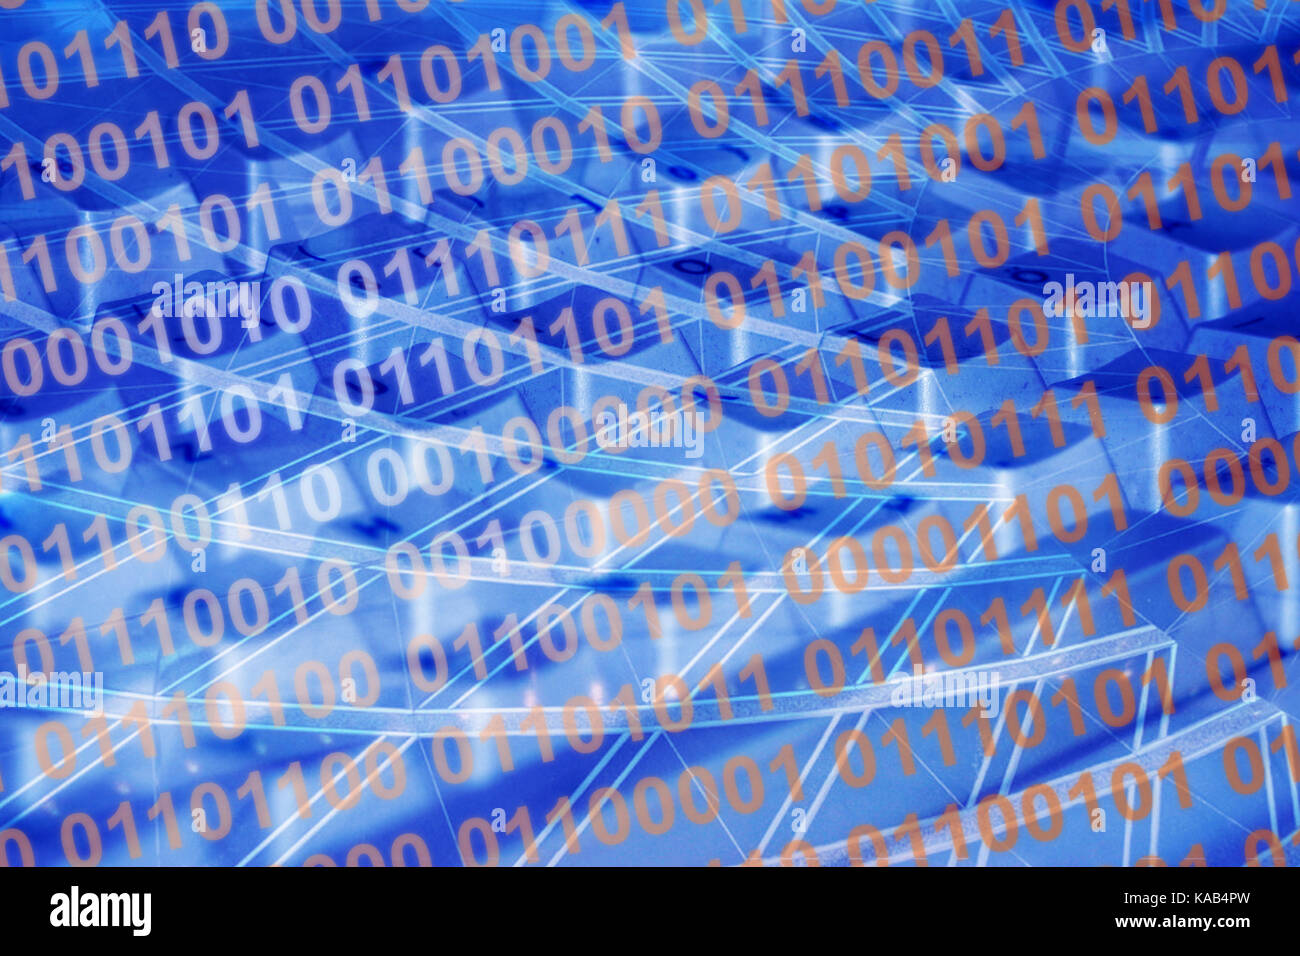 Sullo sfondo il codice binario in blu con tastiera e linee -- Hintergrund Binärcode in blau mit Tastatur und Linien Foto Stock